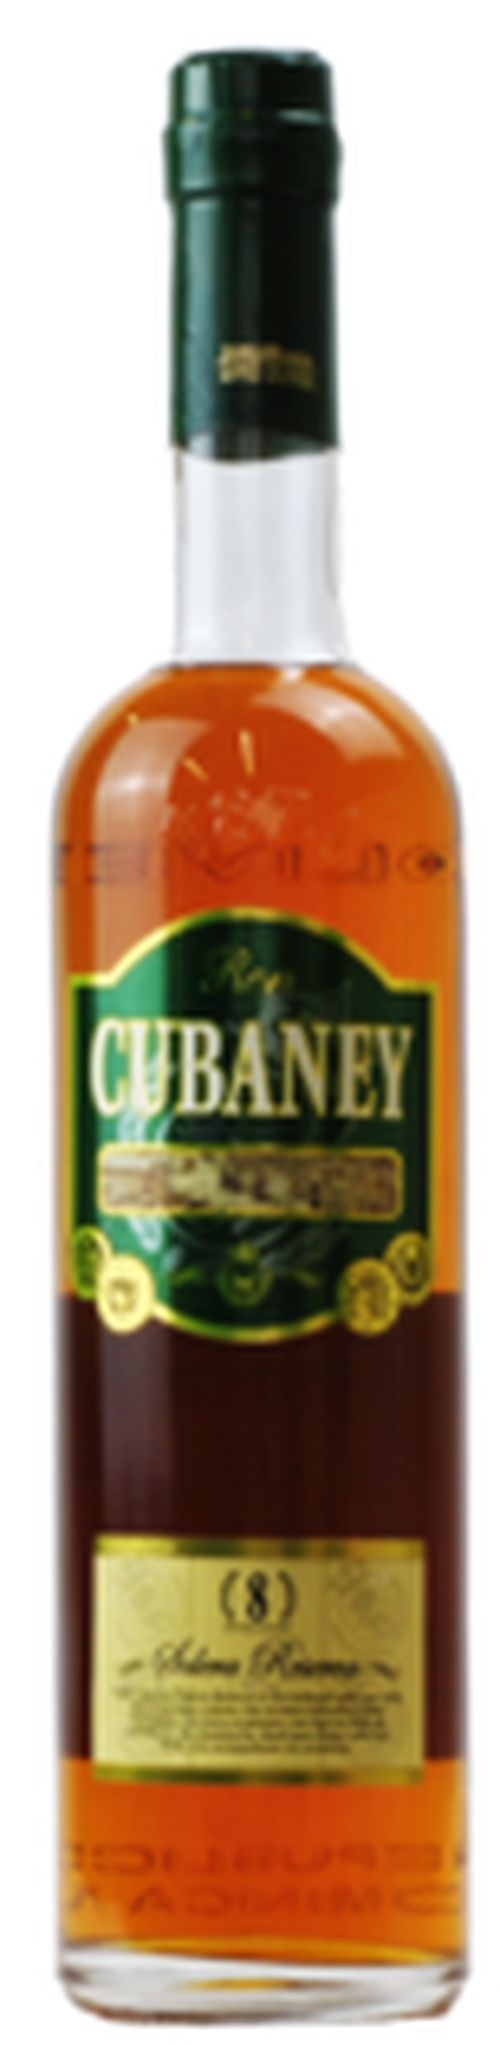 Cubaney Solera 8 Reserva 38% 0,7l